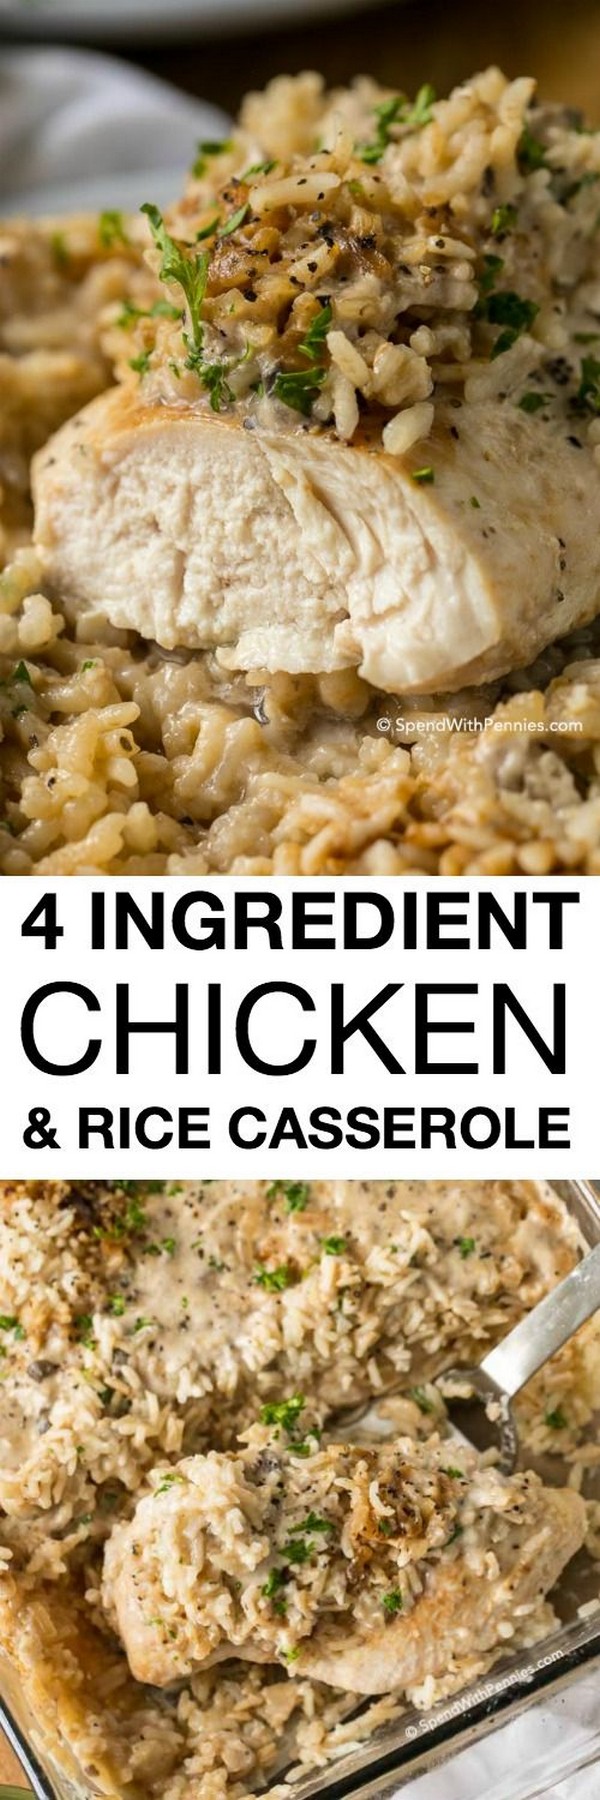 4 Ingredient Chicken Rice Casserole